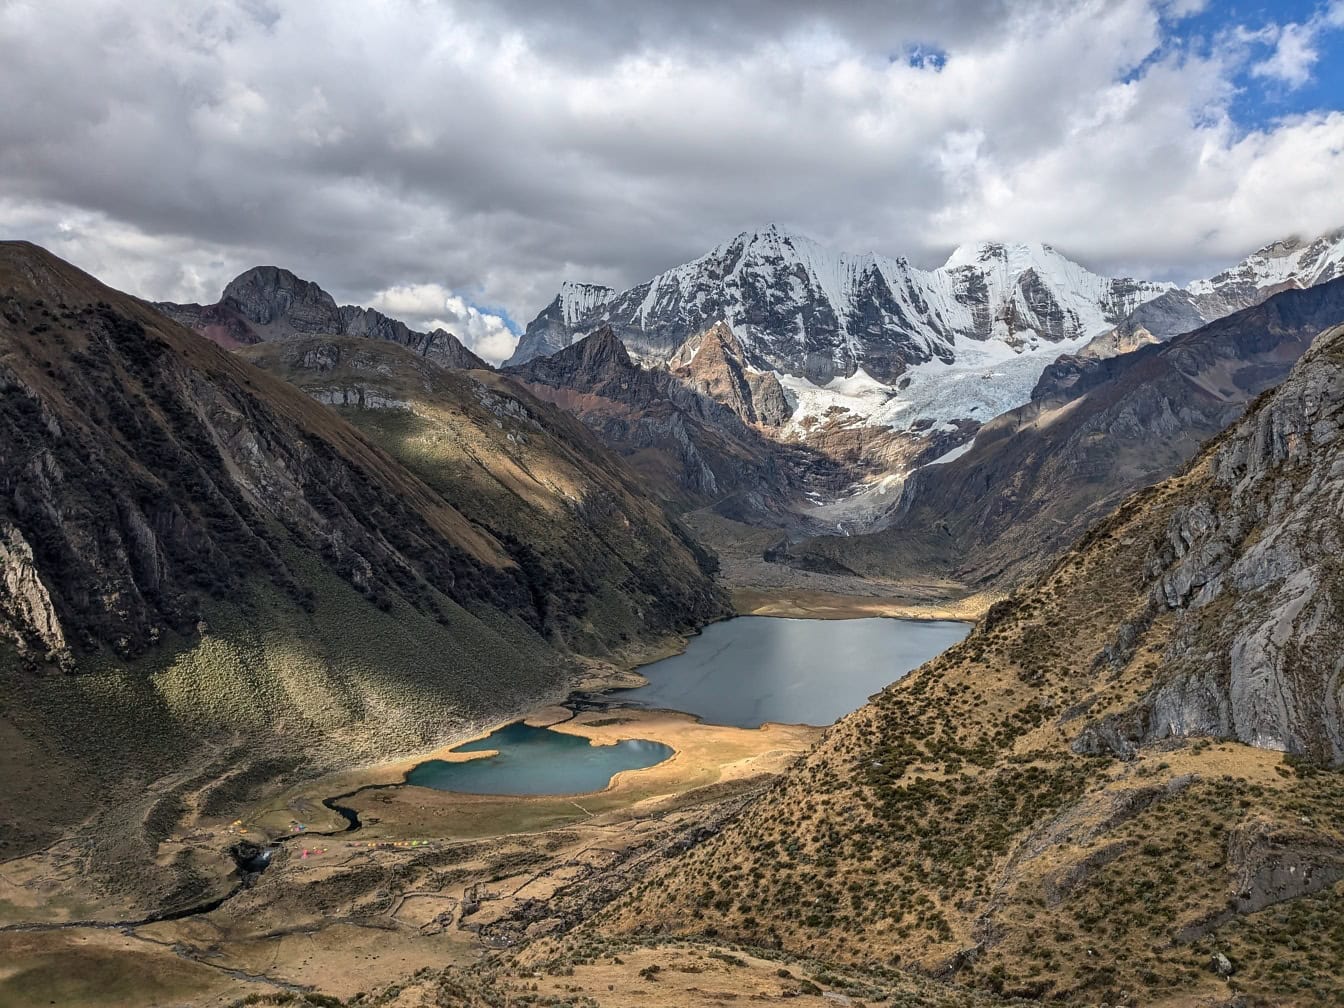 Panoramautsikt över sjöar omgivna av berg vid Cordillera Huahuaash, en bergskedja i Anderna i Peru